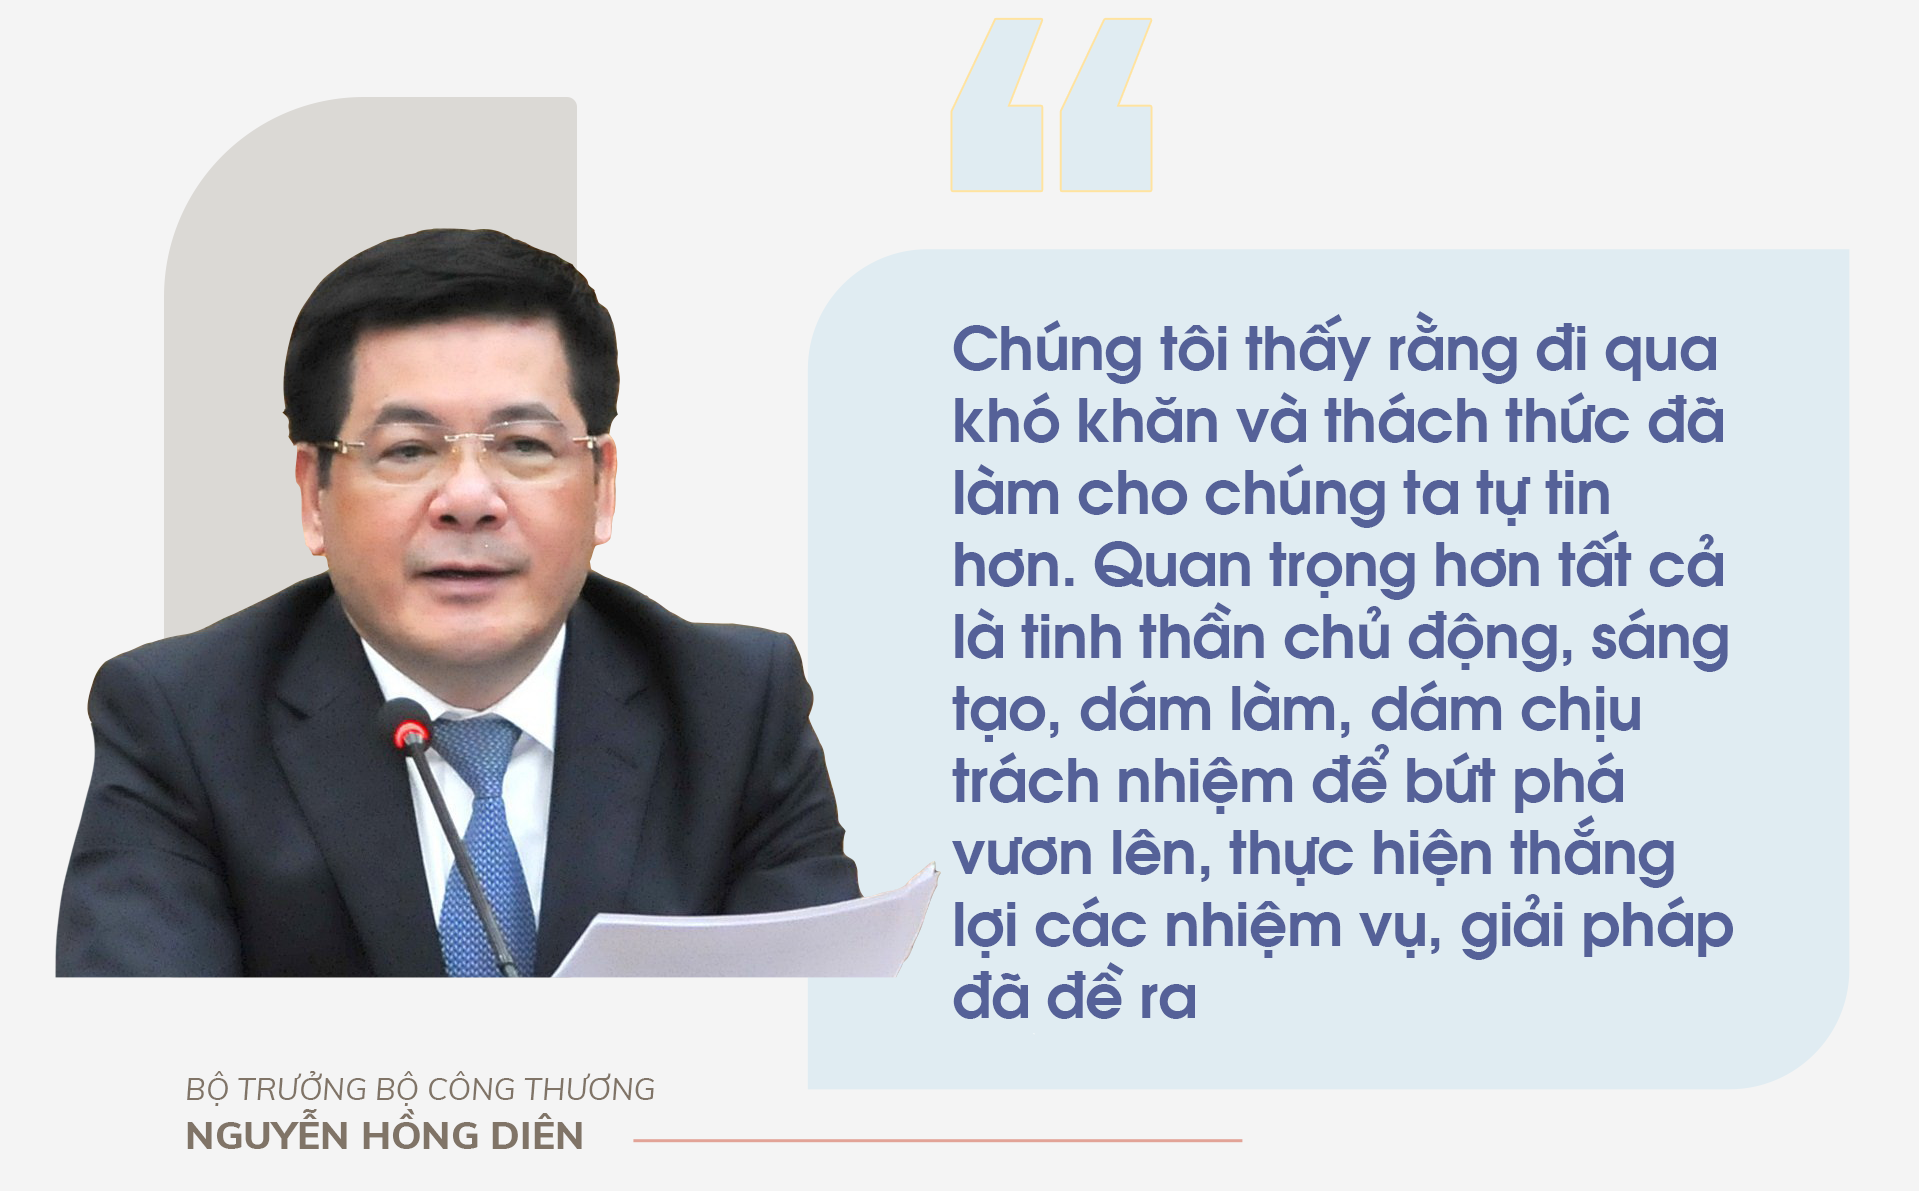 Bộ trưởng Bộ Công Thương Nguyễn Hồng Diên: Khó khăn đi qua, chúng ta tự tin hơn - ảnh 7